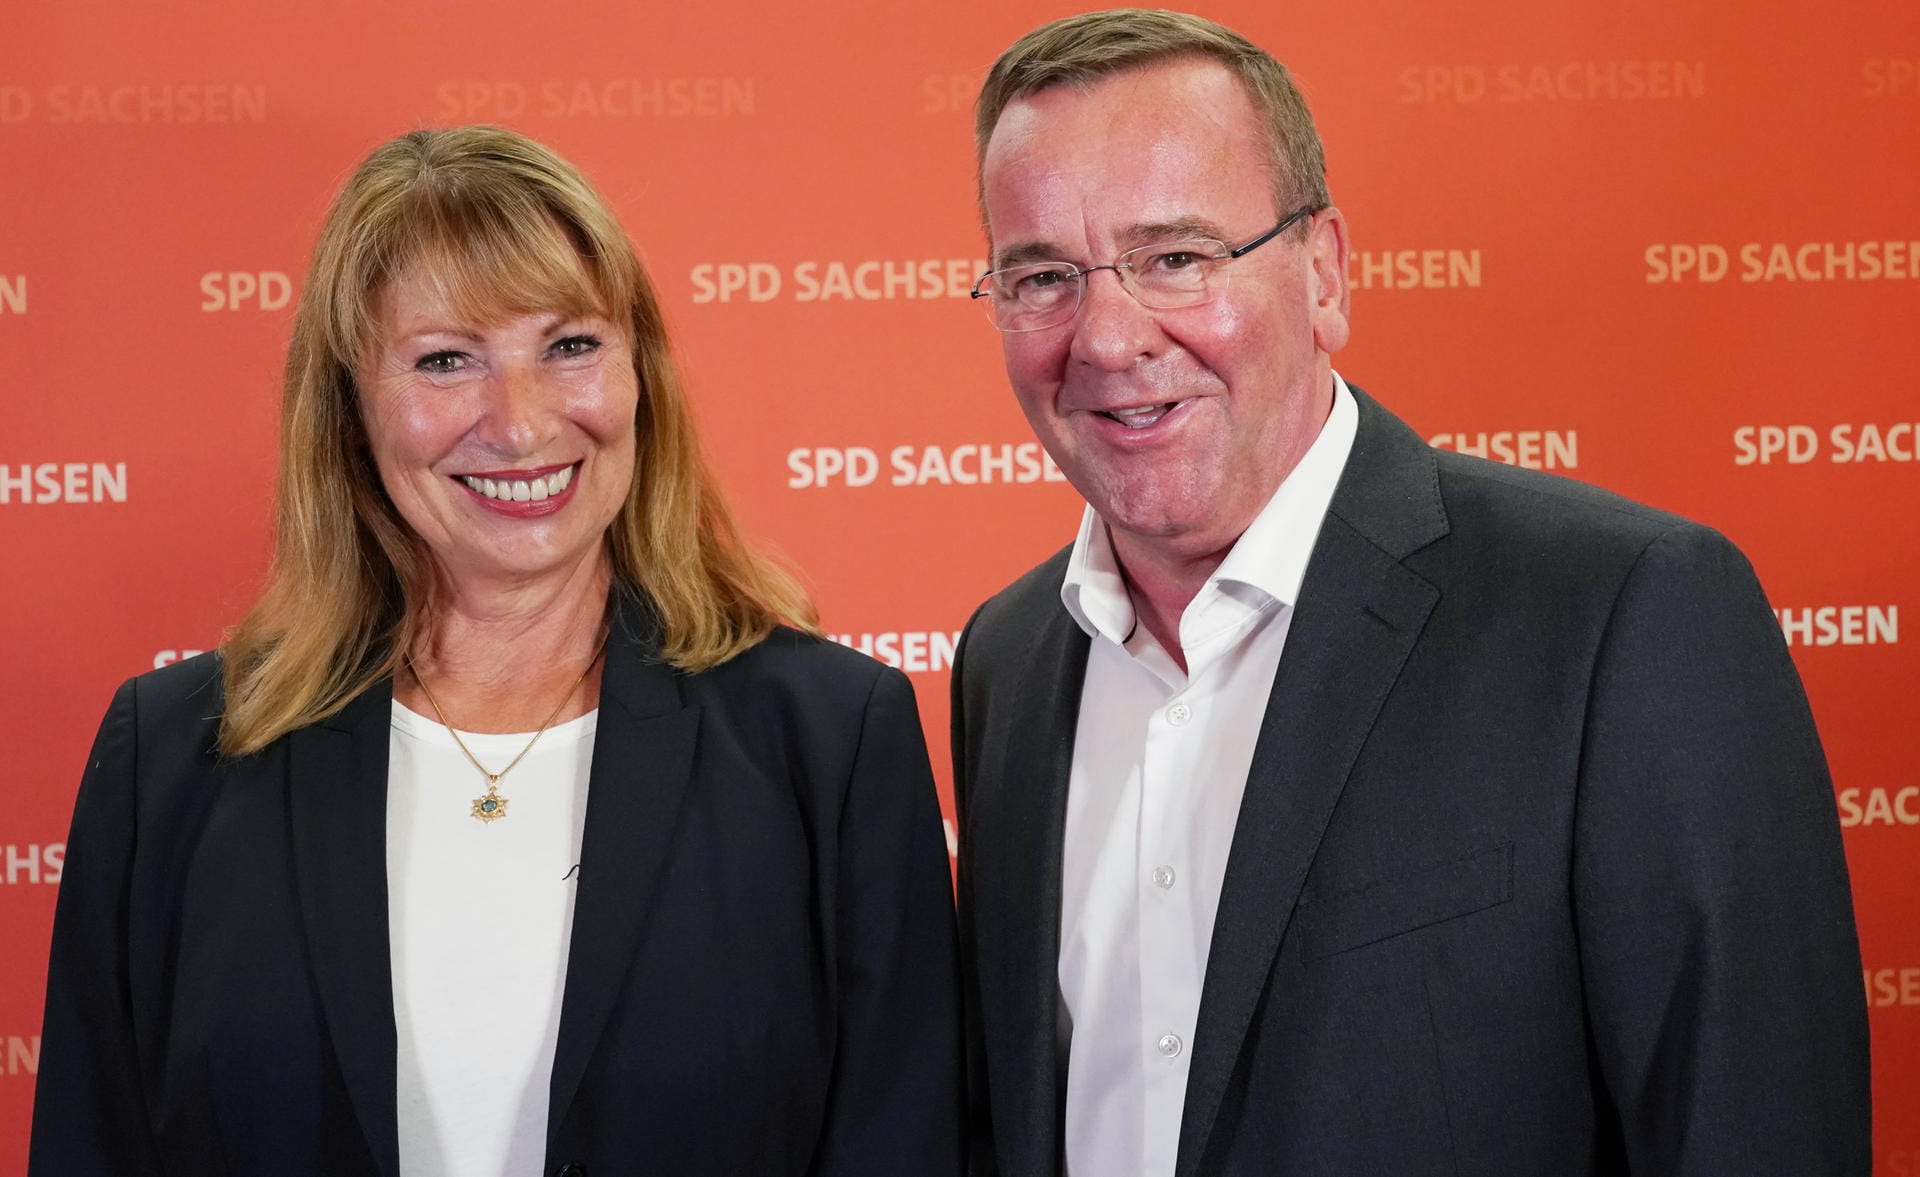 Petra Köpping ist derzeit Integrationsministerin in Sachsen – und beschreibt sich selbst als "Stimme des Ostens" in der Partei. Sie tritt mit dem niedersächsischen Innenminister Boris Pistorius an, der zu den bekanntesten SPD-Innenpolitikern zählt. Dem Duo werden gute Chancen auf den Vorsitz zugesprochen.